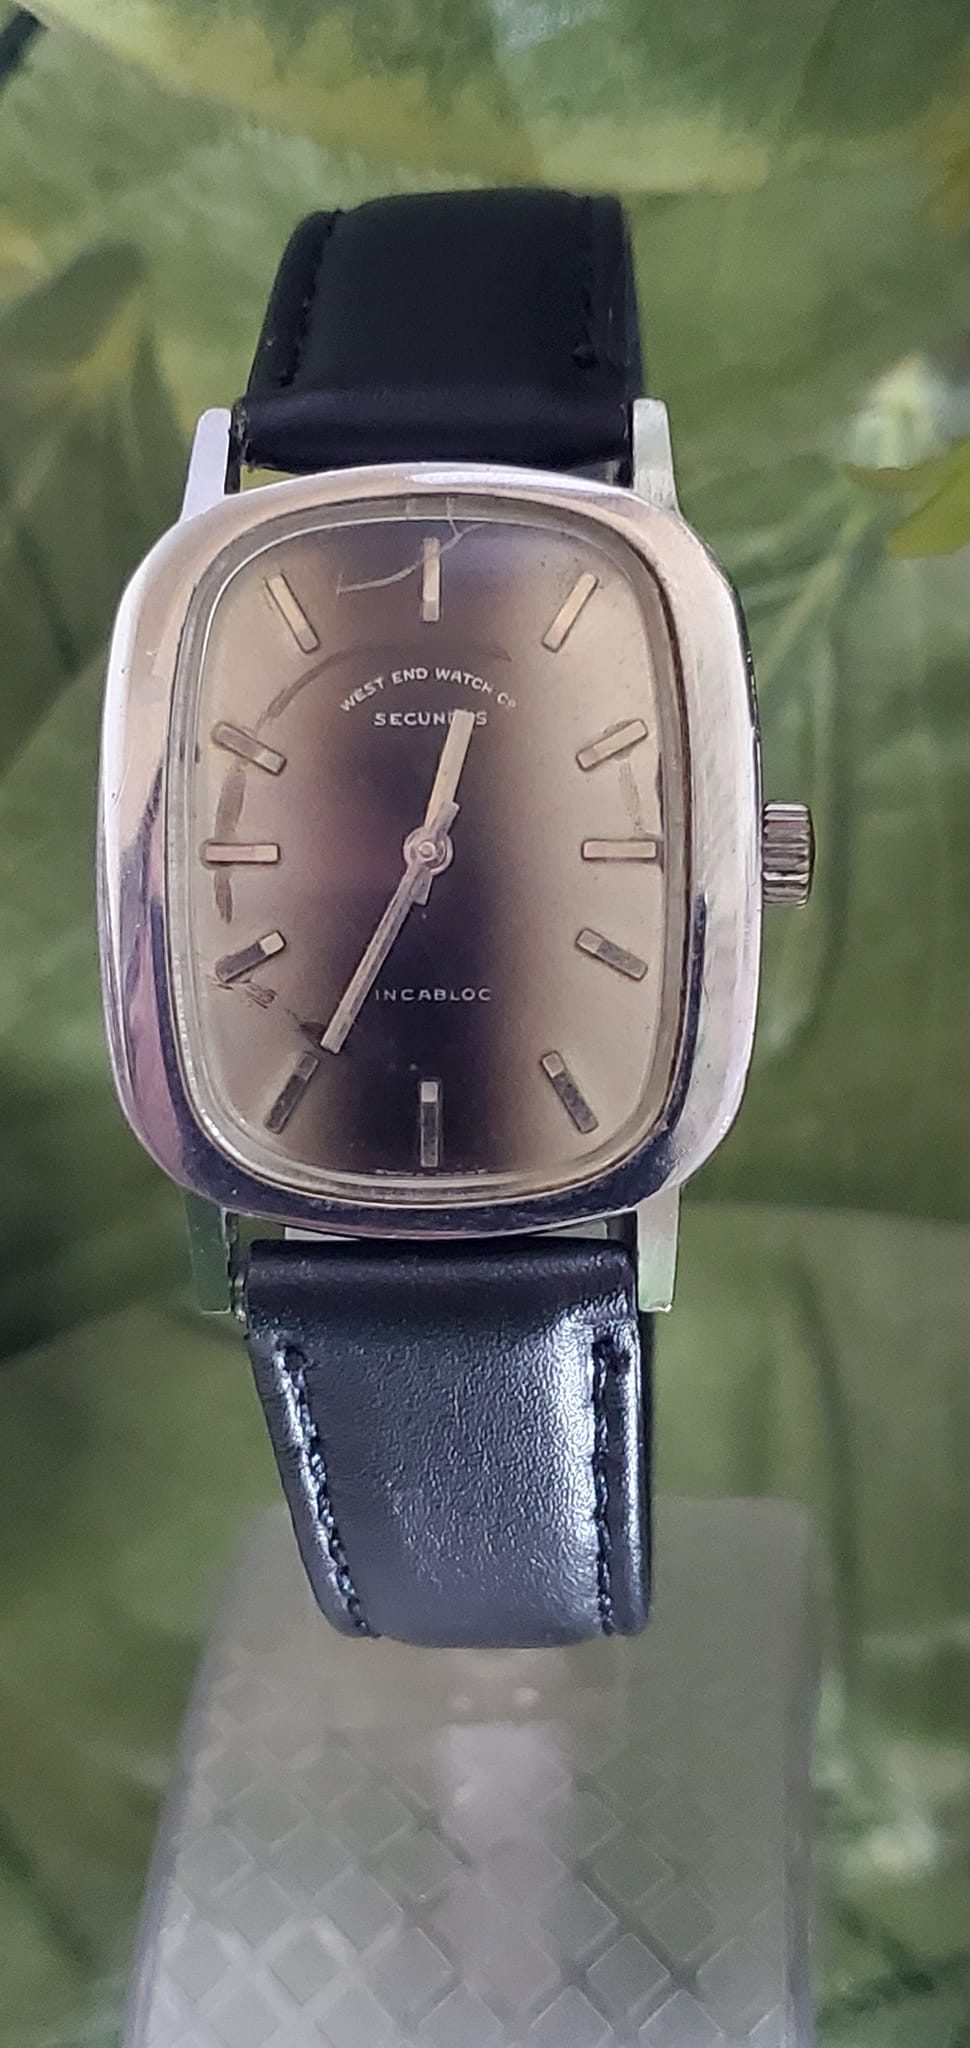 Vintage Westend watch Co Switzerland made Handwind Watch for Men's